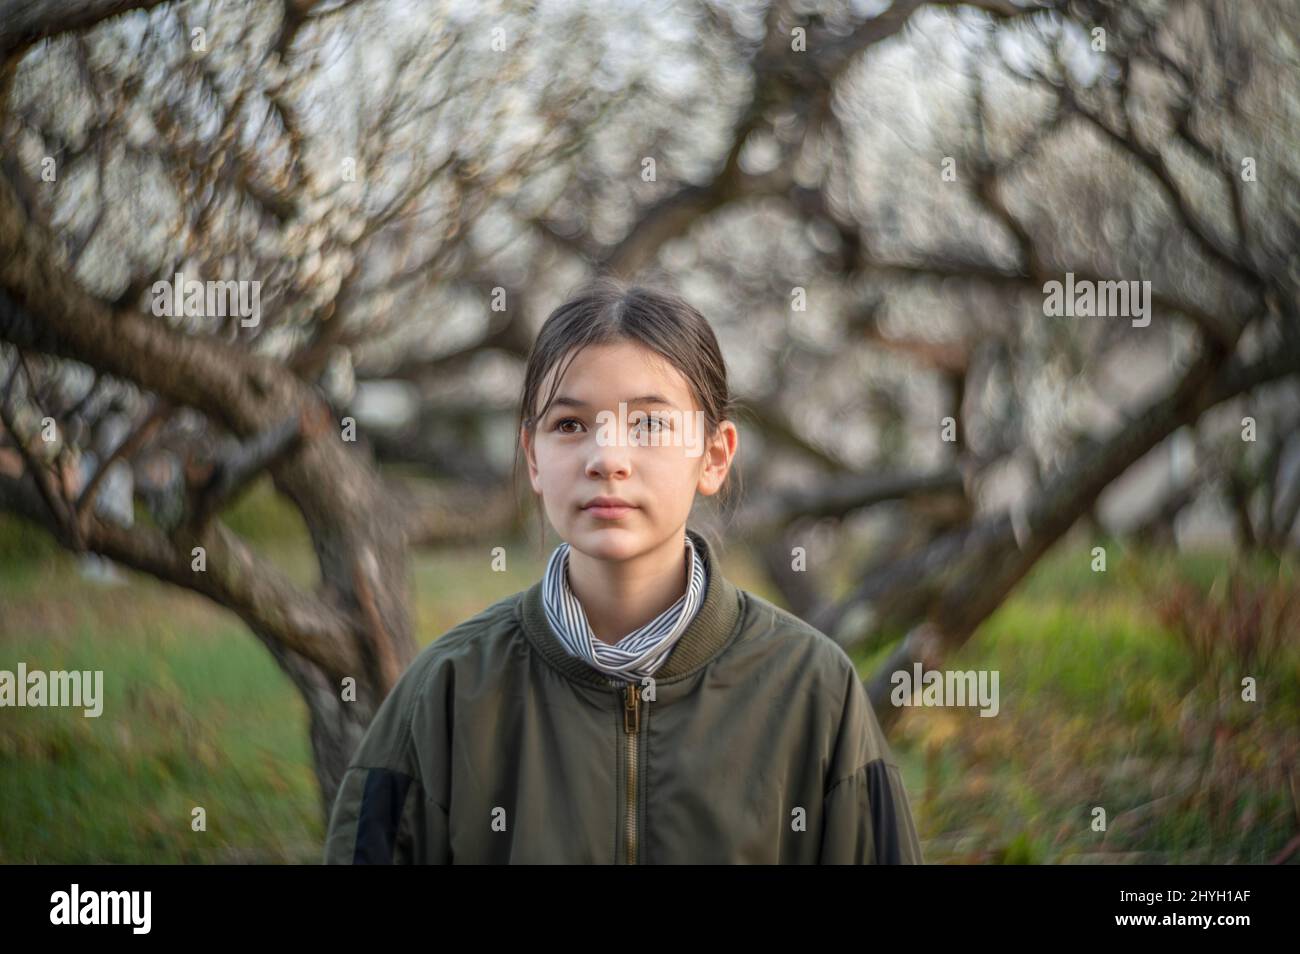 Ritratto di una ragazza felice pre teen in un parco. Bambino che indossa una giacca verde e un dolcevita. Alberi in fiore sullo sfondo. Primavera. Foto Stock